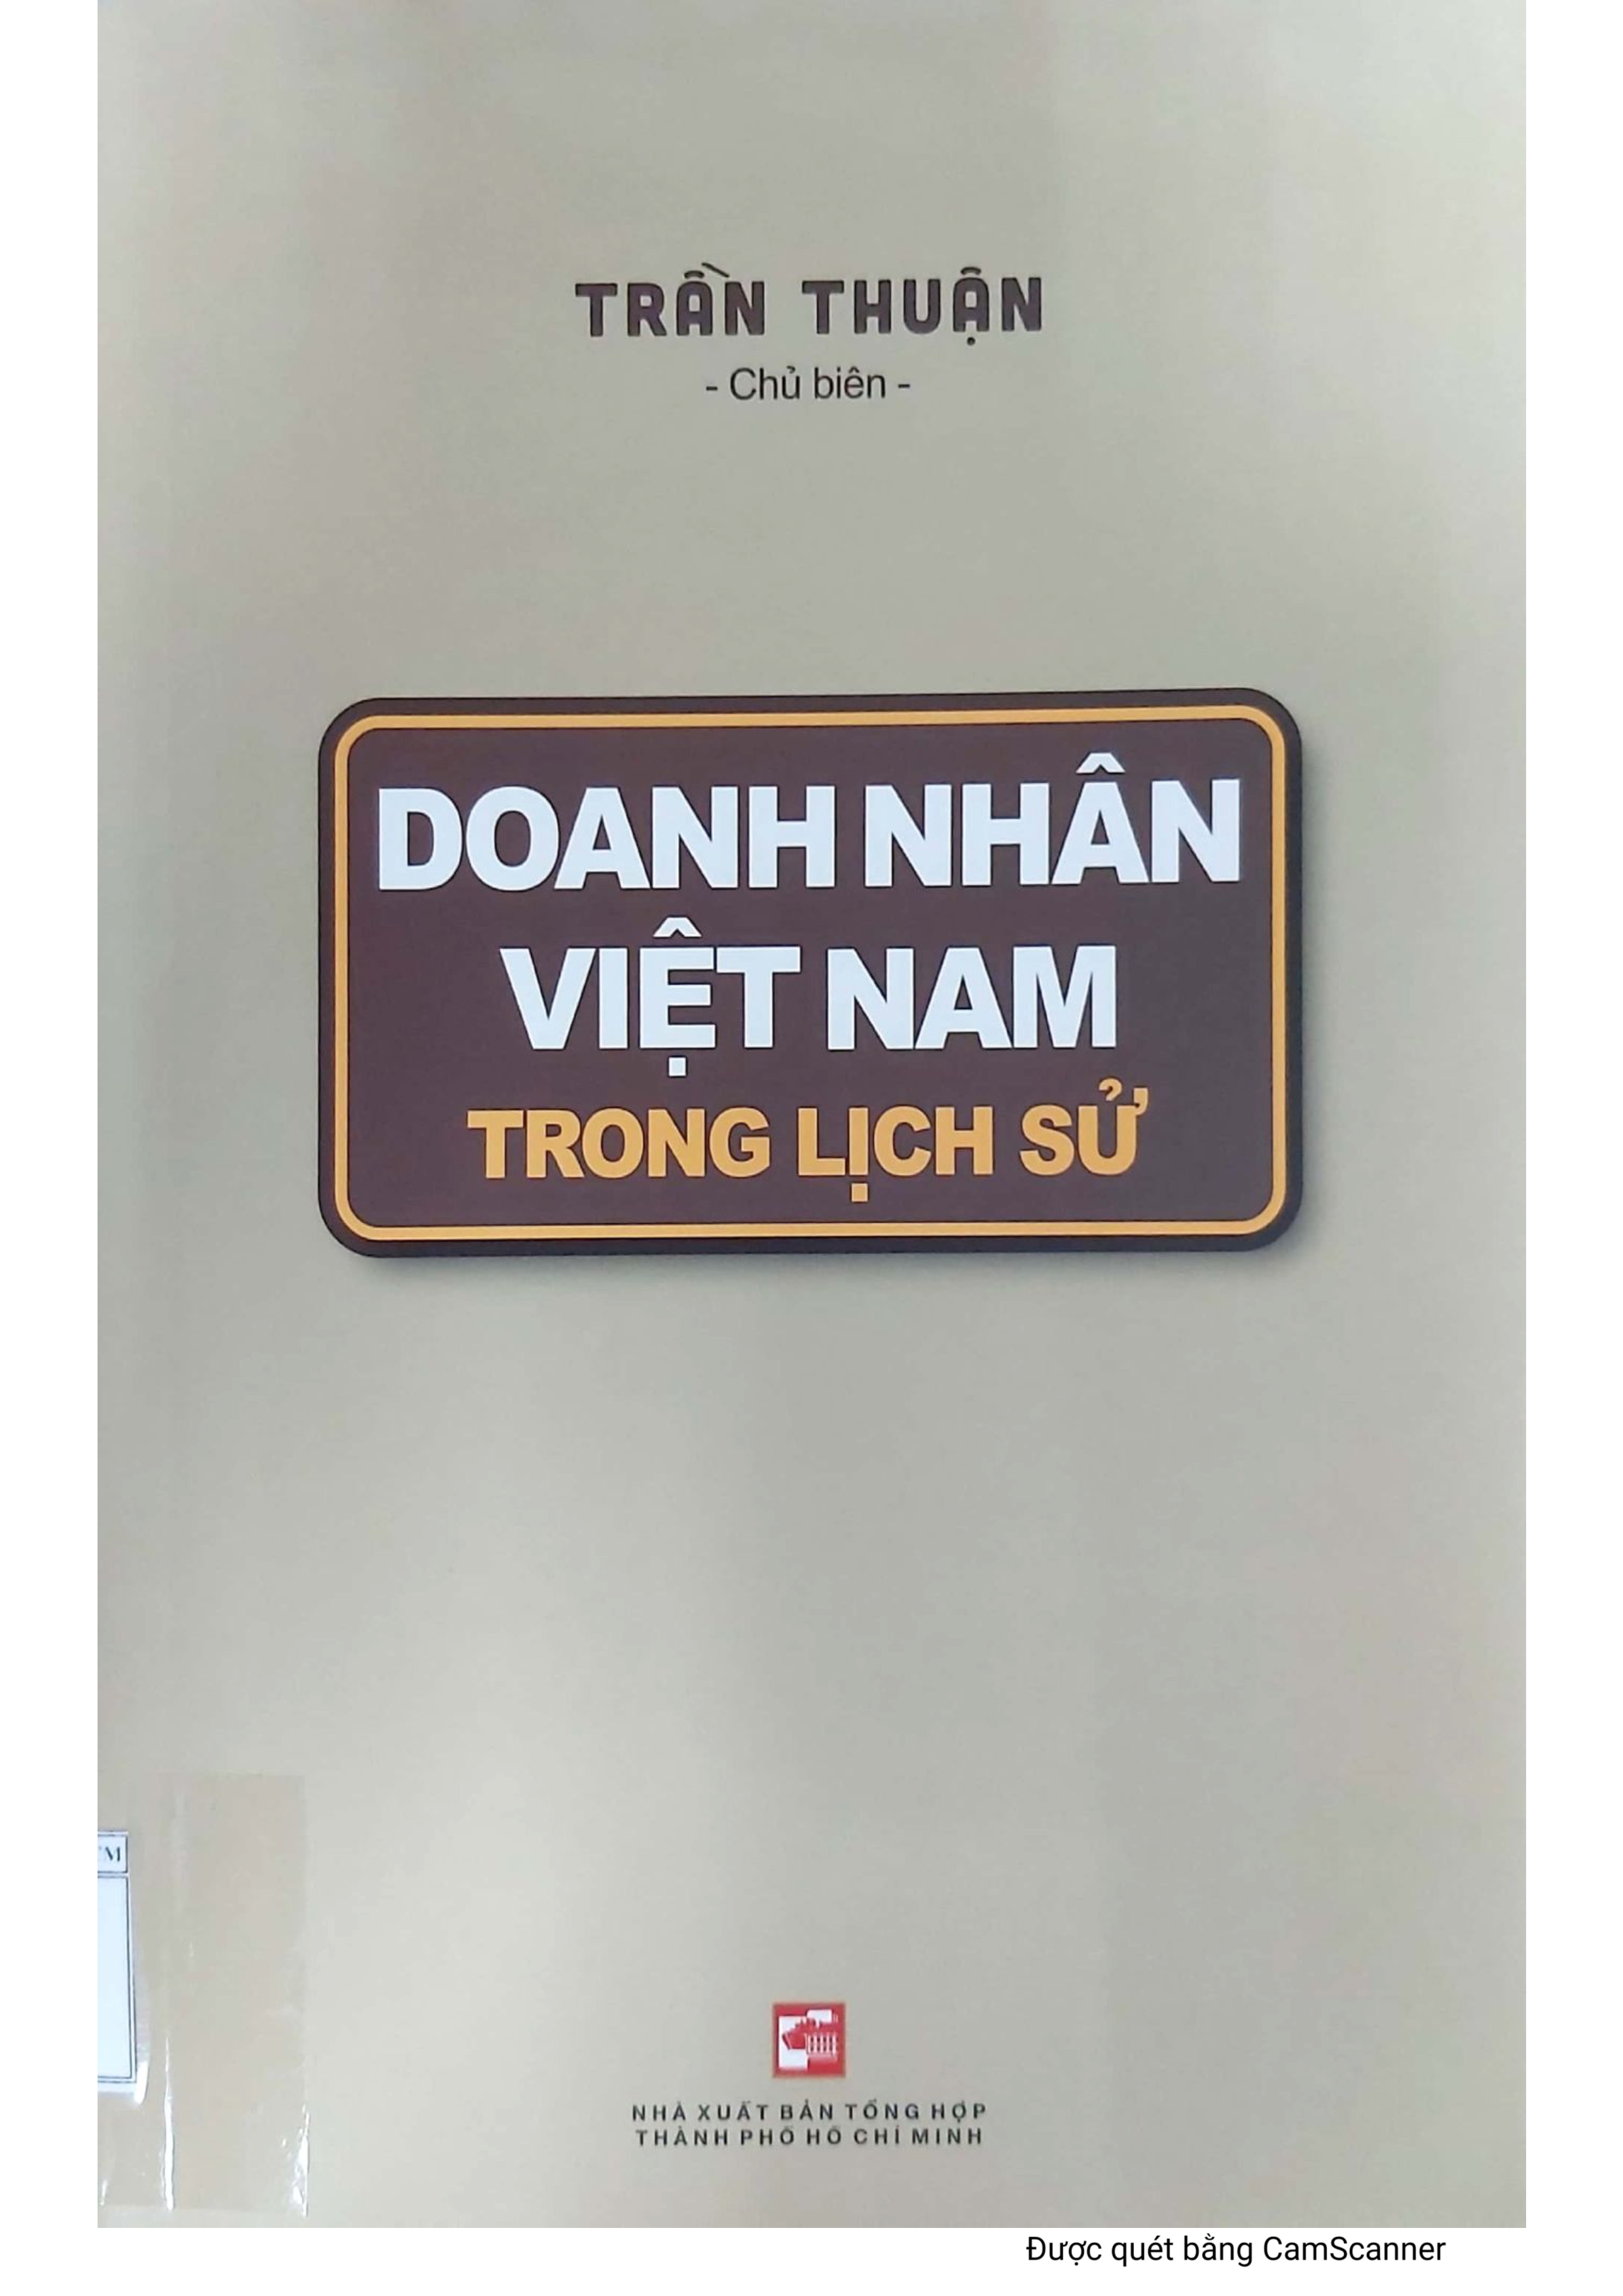 Doanh nhân Việt Nam trong lịch sử